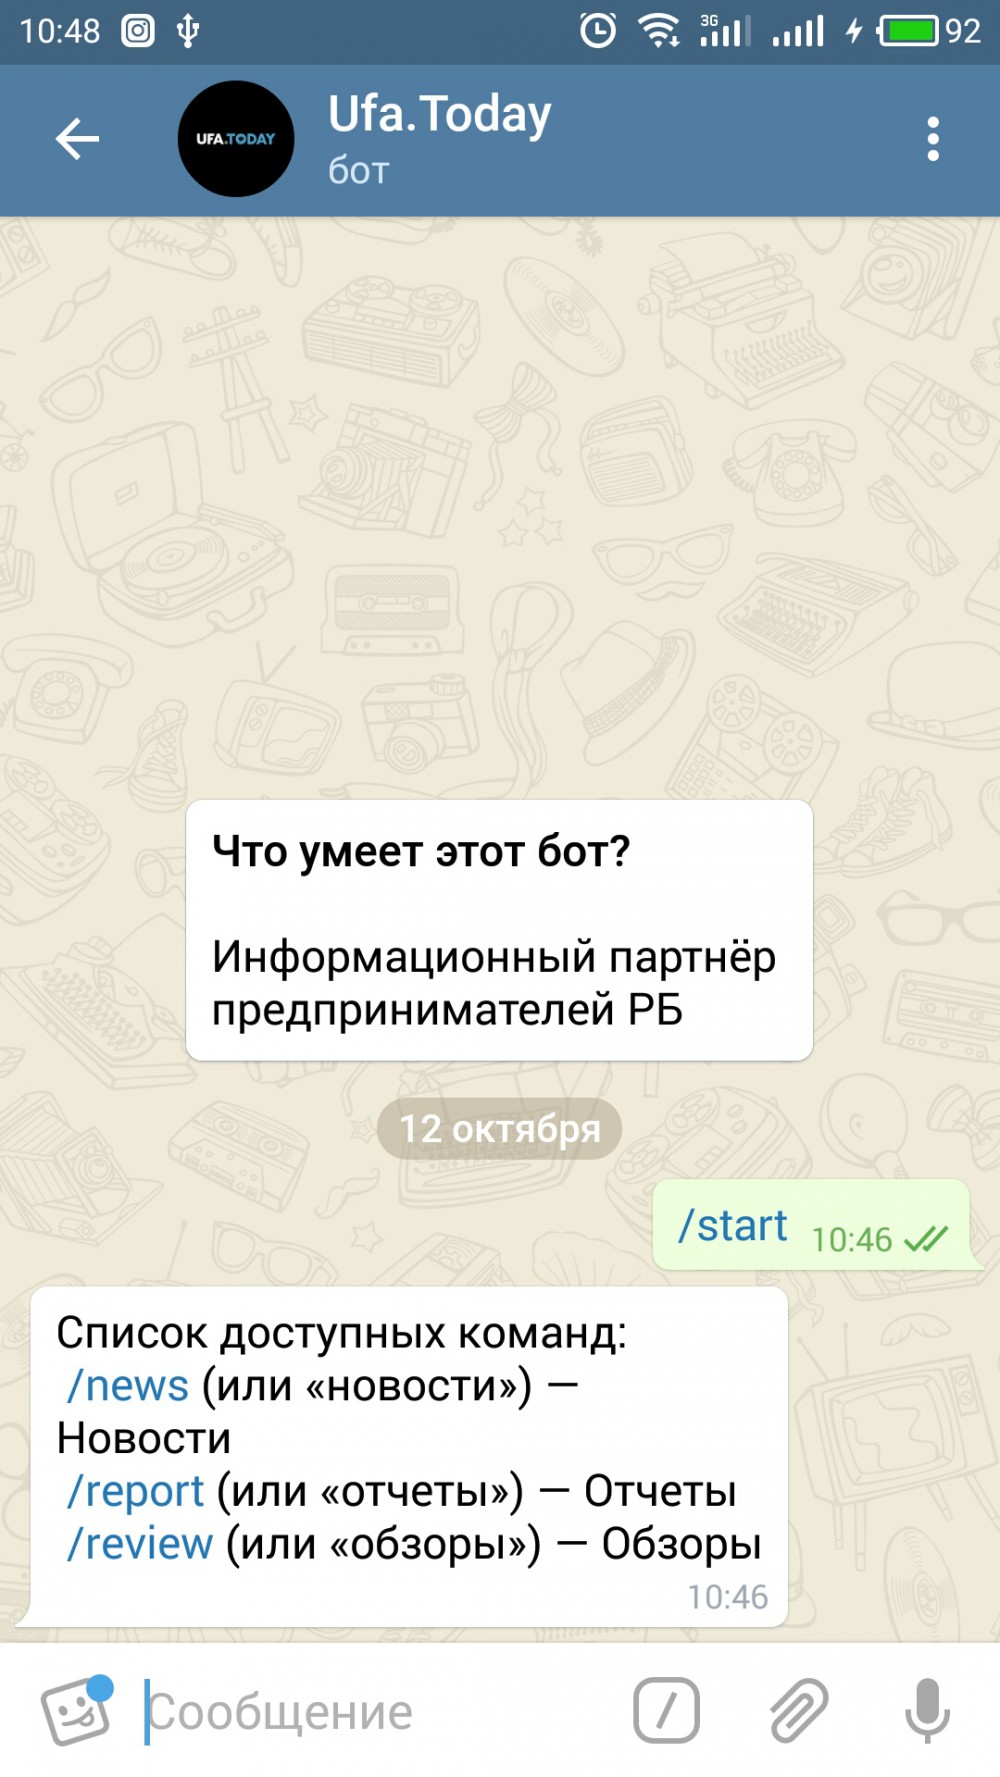 Как работает telegram-бот портала Ufa.Today